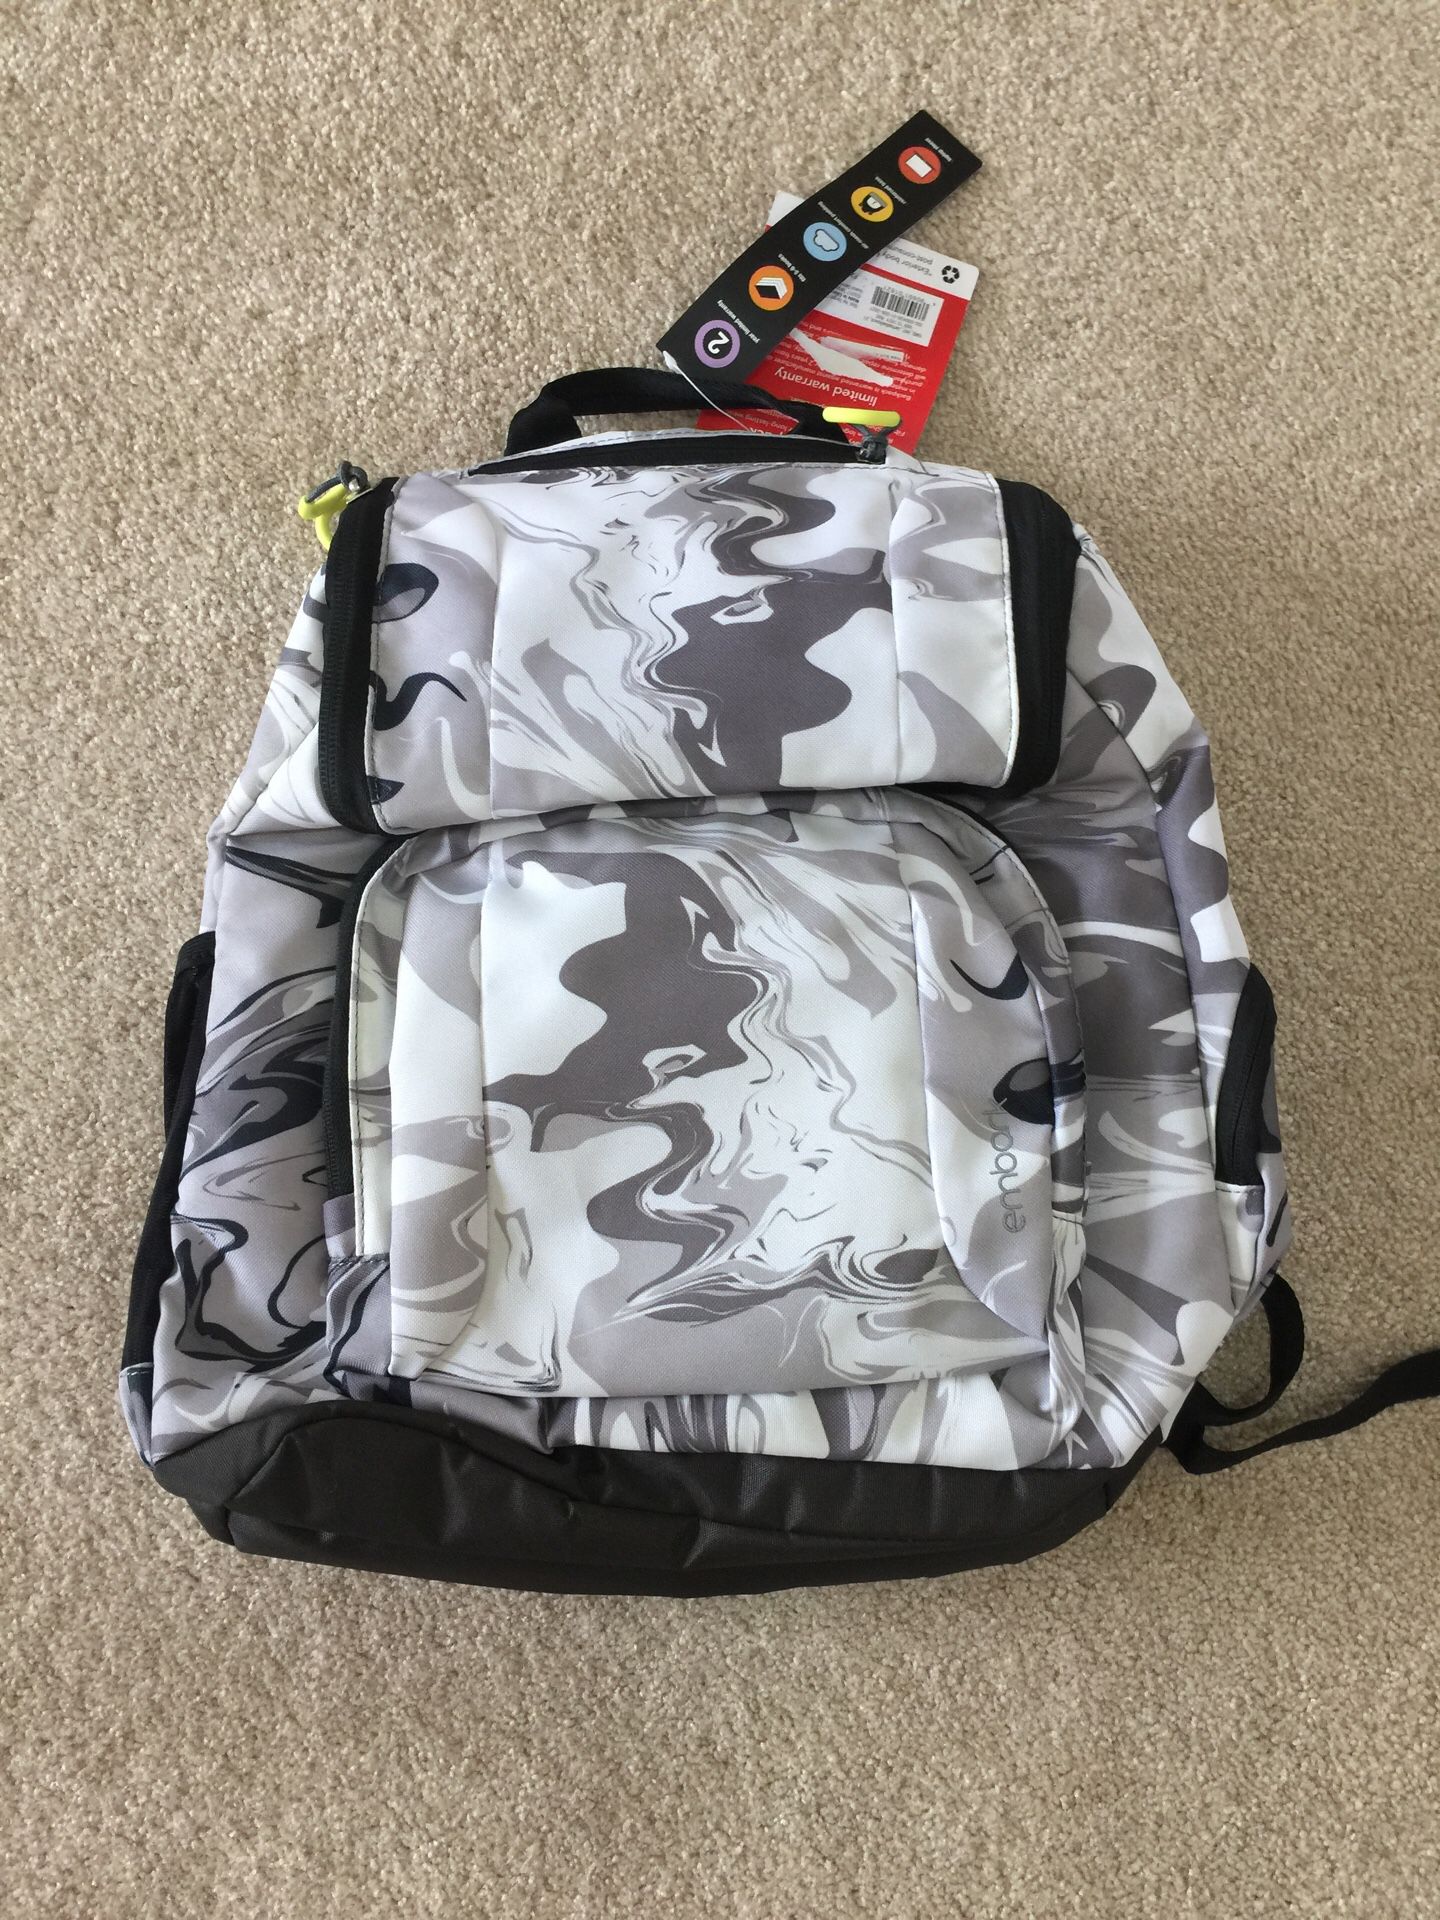 Laptop bag embark jartop backpack